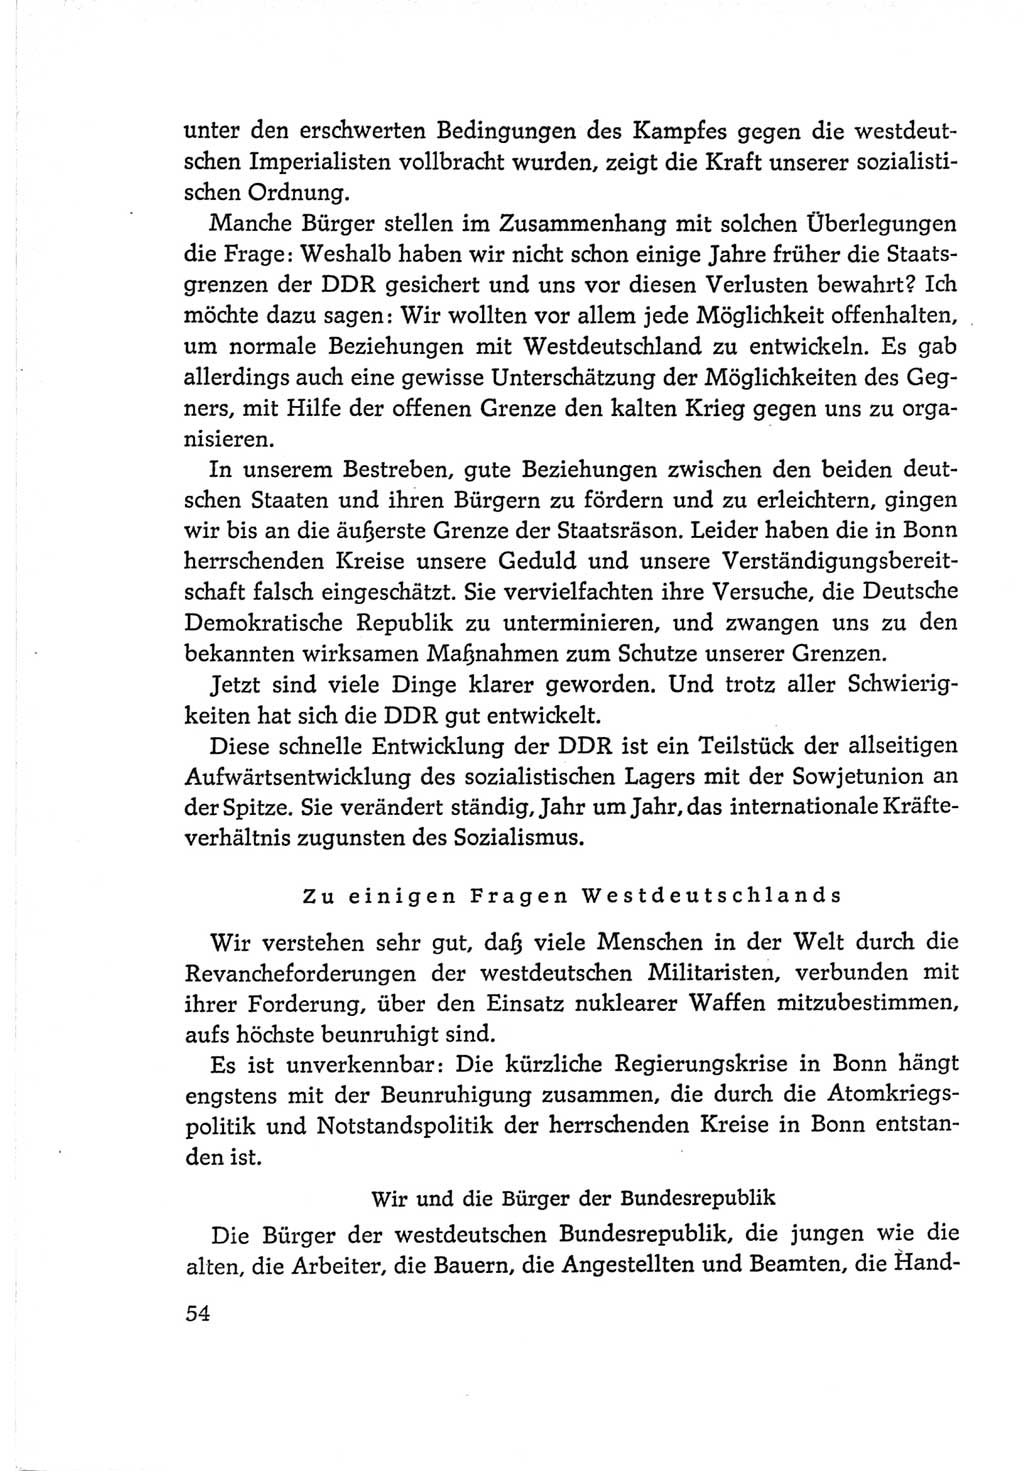 Protokoll der Verhandlungen des Ⅵ. Parteitages der Sozialistischen Einheitspartei Deutschlands (SED) [Deutsche Demokratische Republik (DDR)] 1963, Band Ⅰ, Seite 54 (Prot. Verh. Ⅵ. PT SED DDR 1963, Bd. Ⅰ, S. 54)